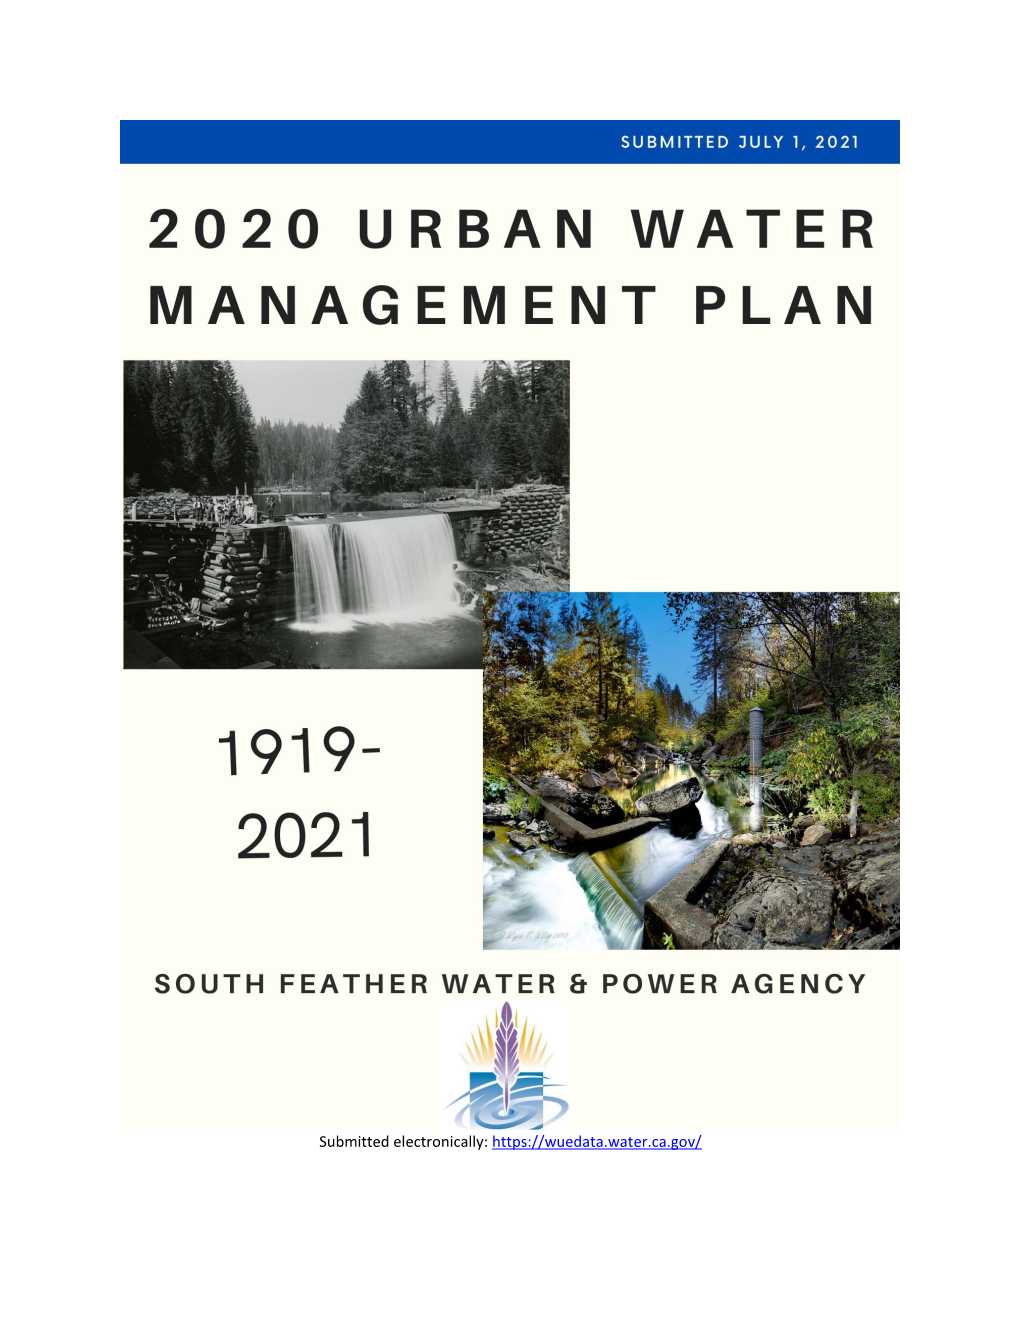 2020 Urban Water Management Plan